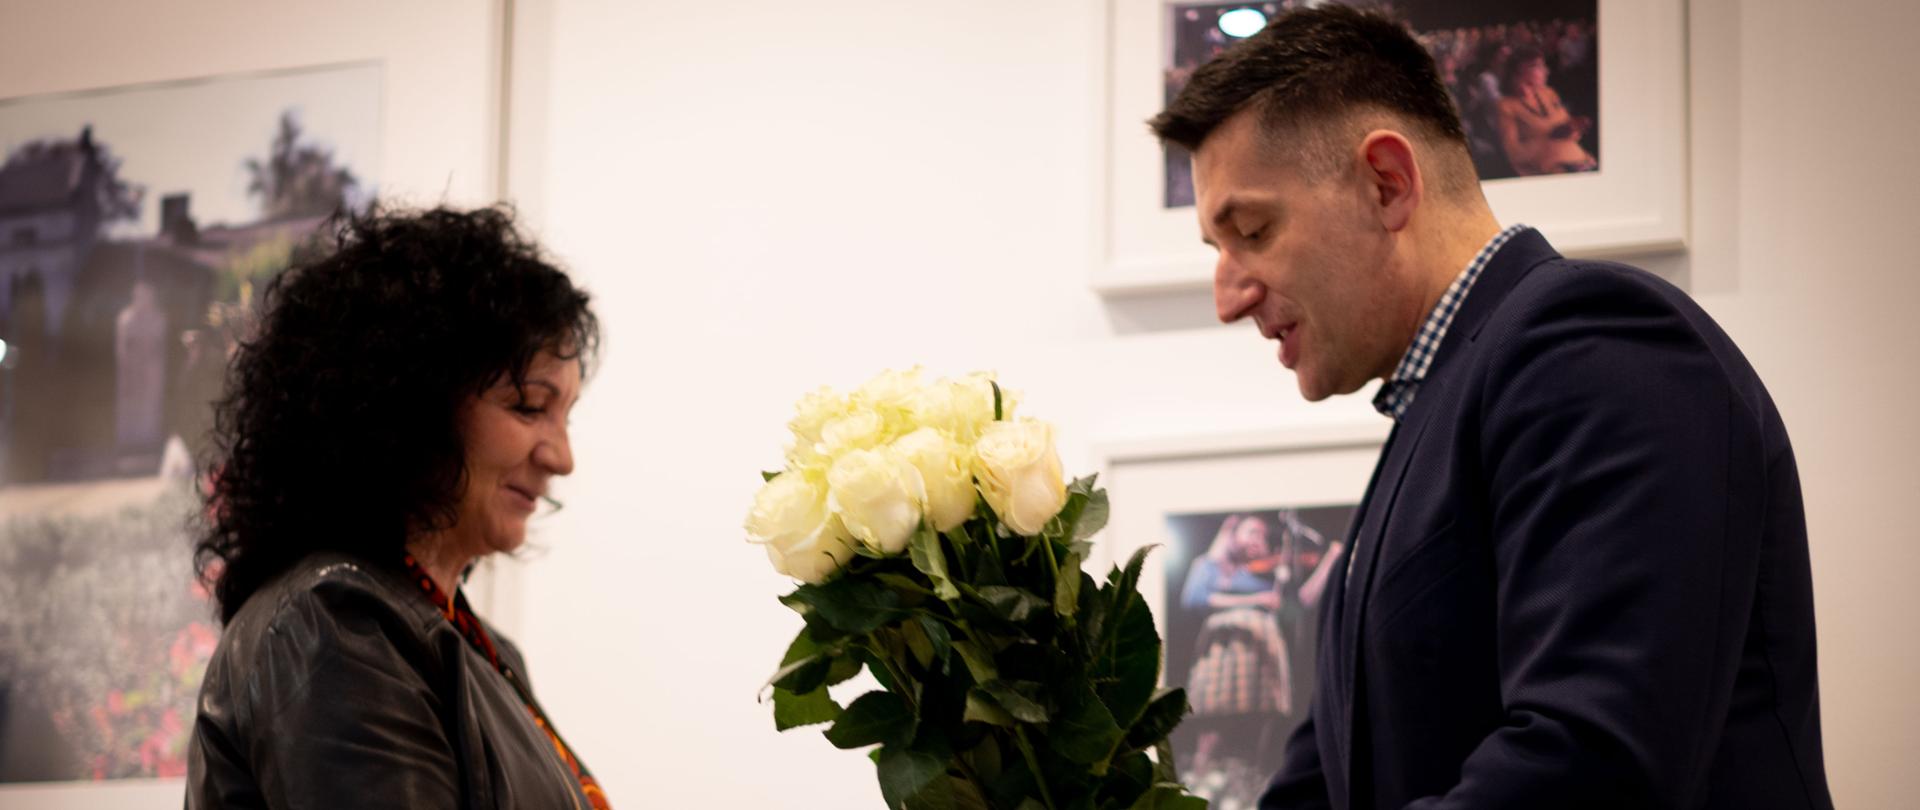 Burmistrz Konstantynowa Łódzkiego wręcza kwiaty pani dyrektor Miejskiego Ośrodka Kultury. 